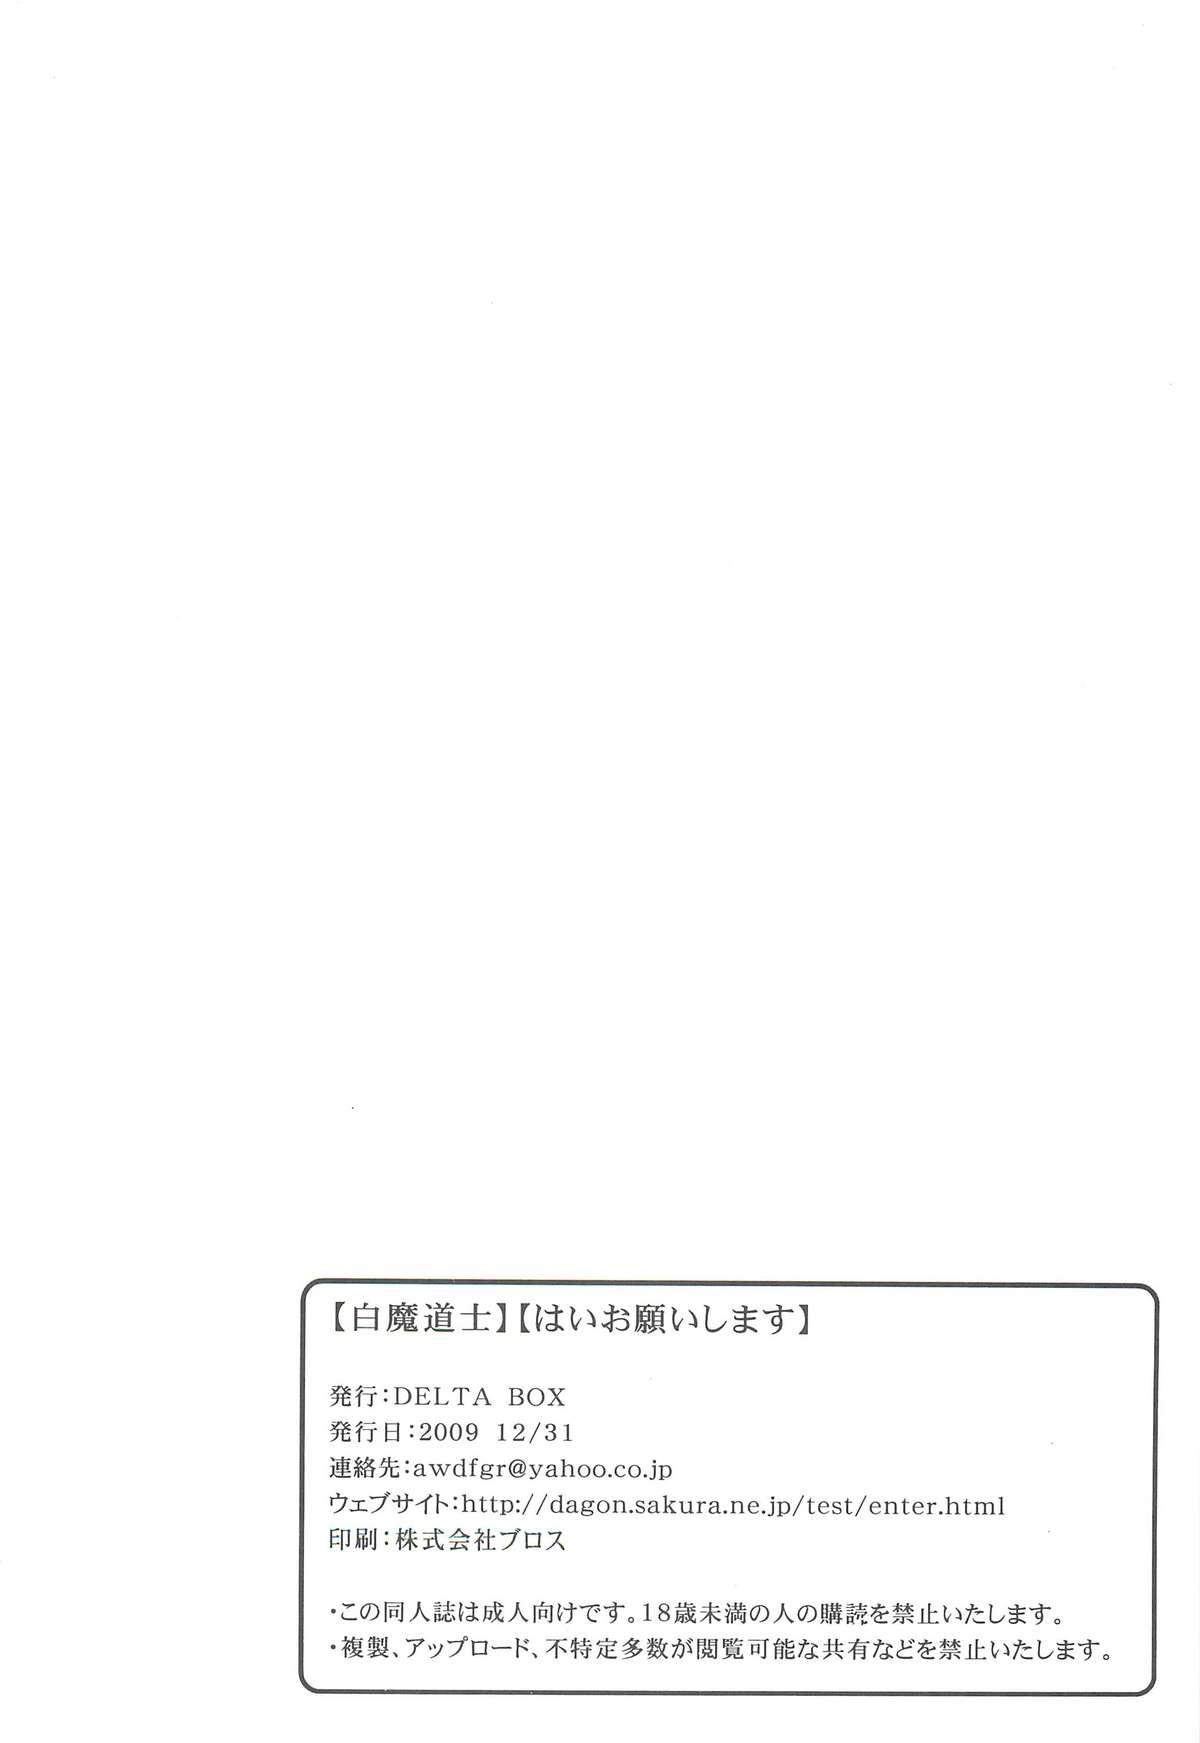 Girl Girl Shiromadoushi Hi Onegaishimasu - Final fantasy xi Webcamchat - Page 26